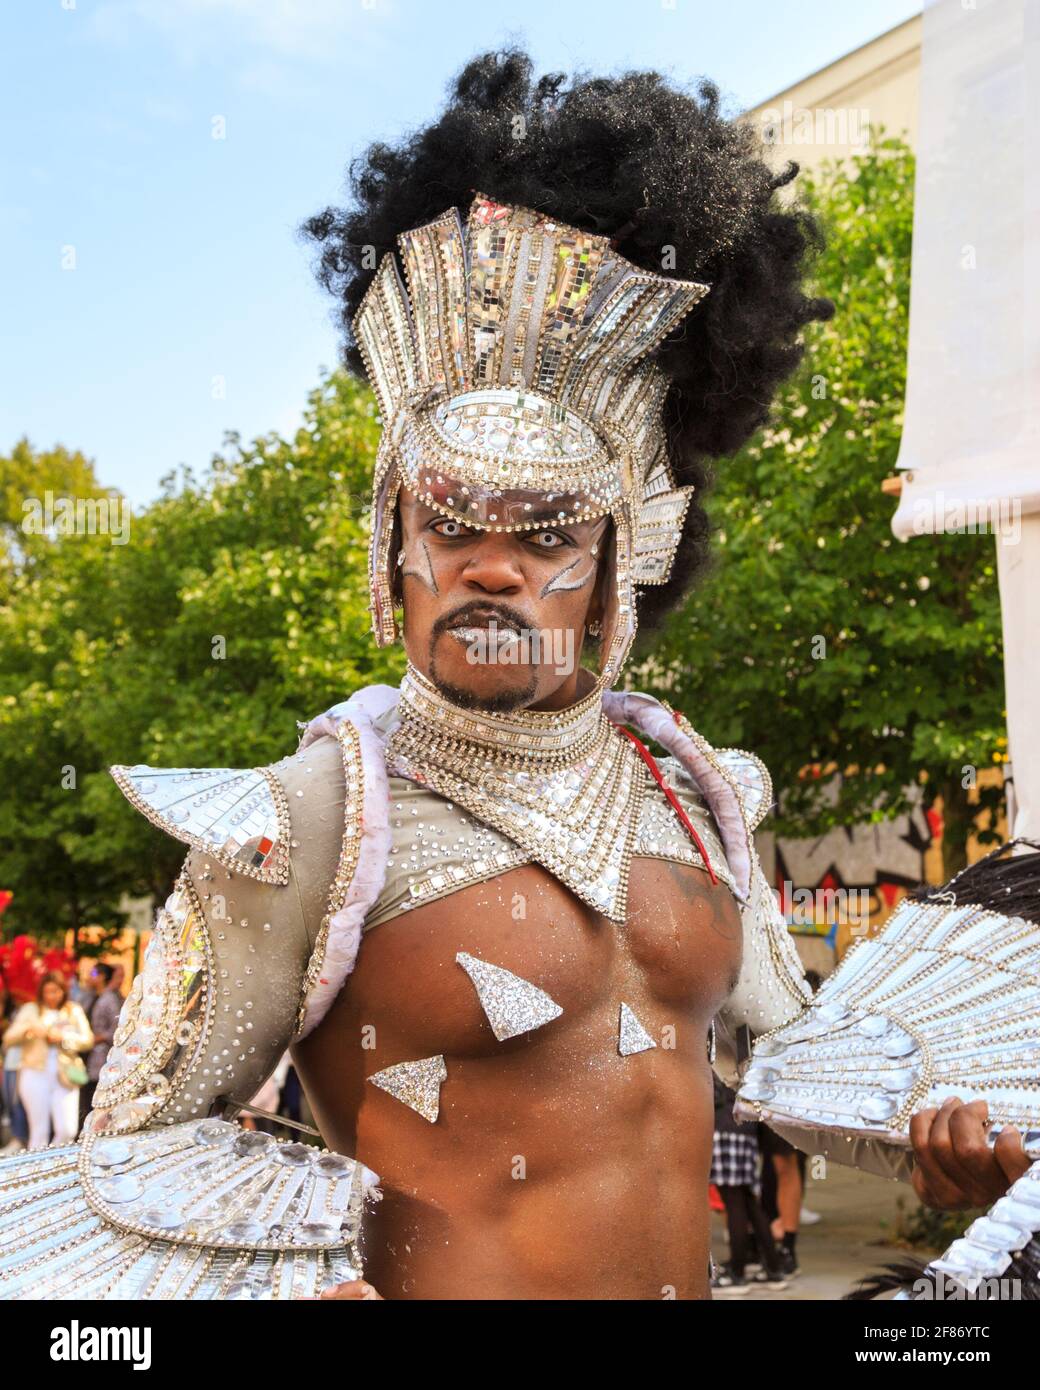 Paraiso School of Samba Dancing interprètes au Notting Hill Carnival Parade, Londres, Royaume-Uni Banque D'Images